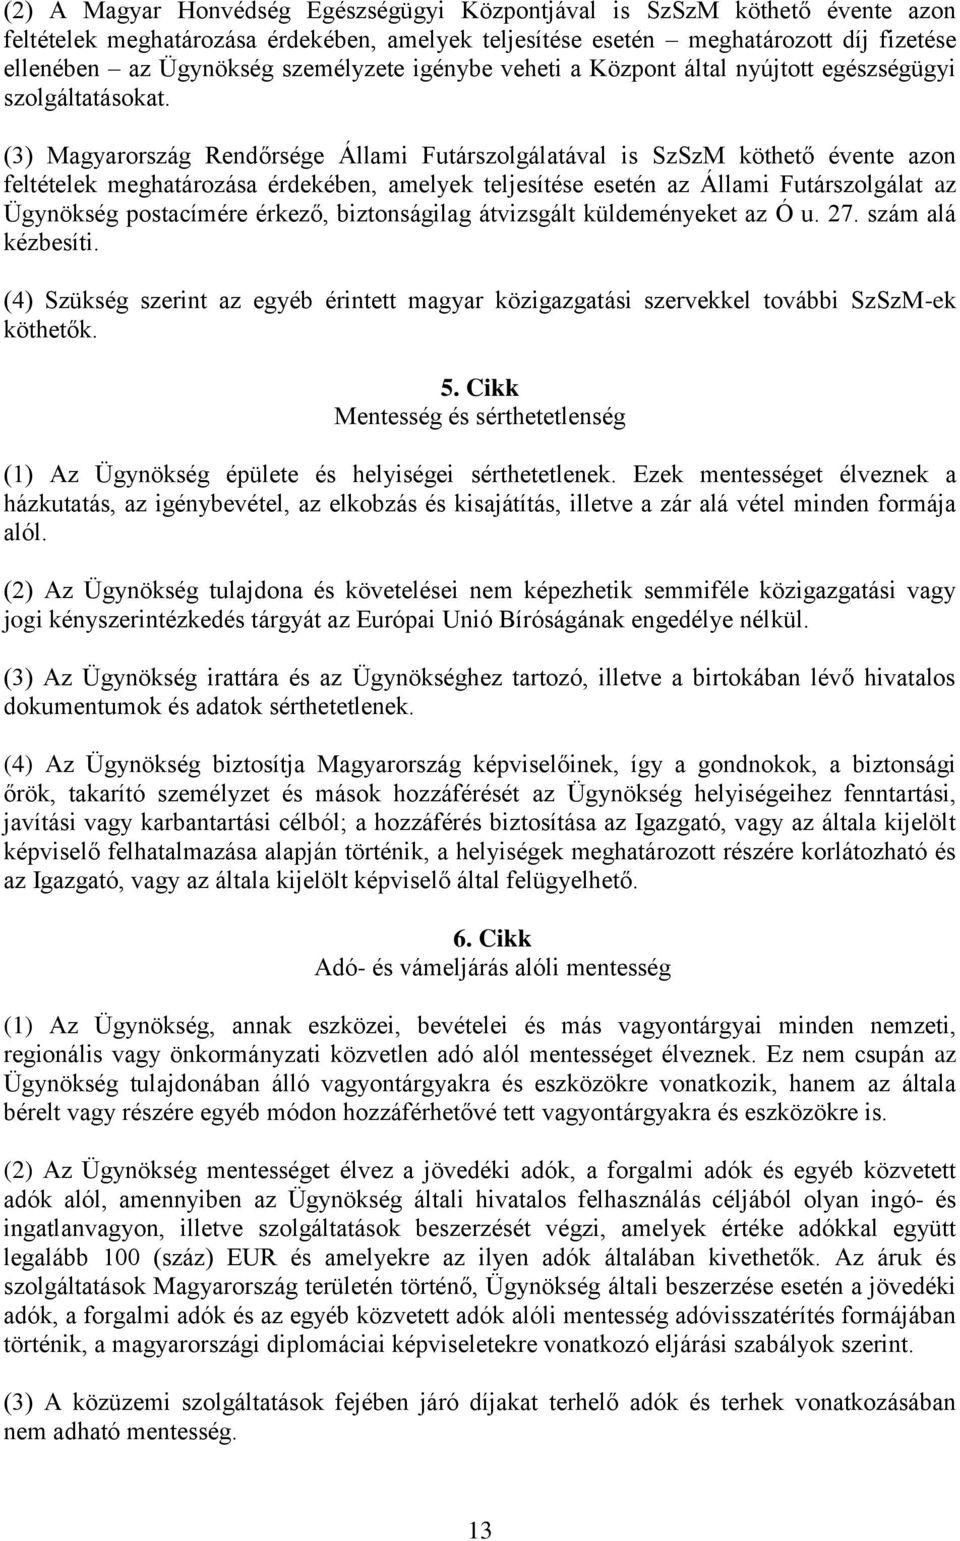 (3) Magyarország Rendőrsége Állami Futárszolgálatával is SzSzM köthető évente azon feltételek meghatározása érdekében, amelyek teljesítése esetén az Állami Futárszolgálat az Ügynökség postacímére